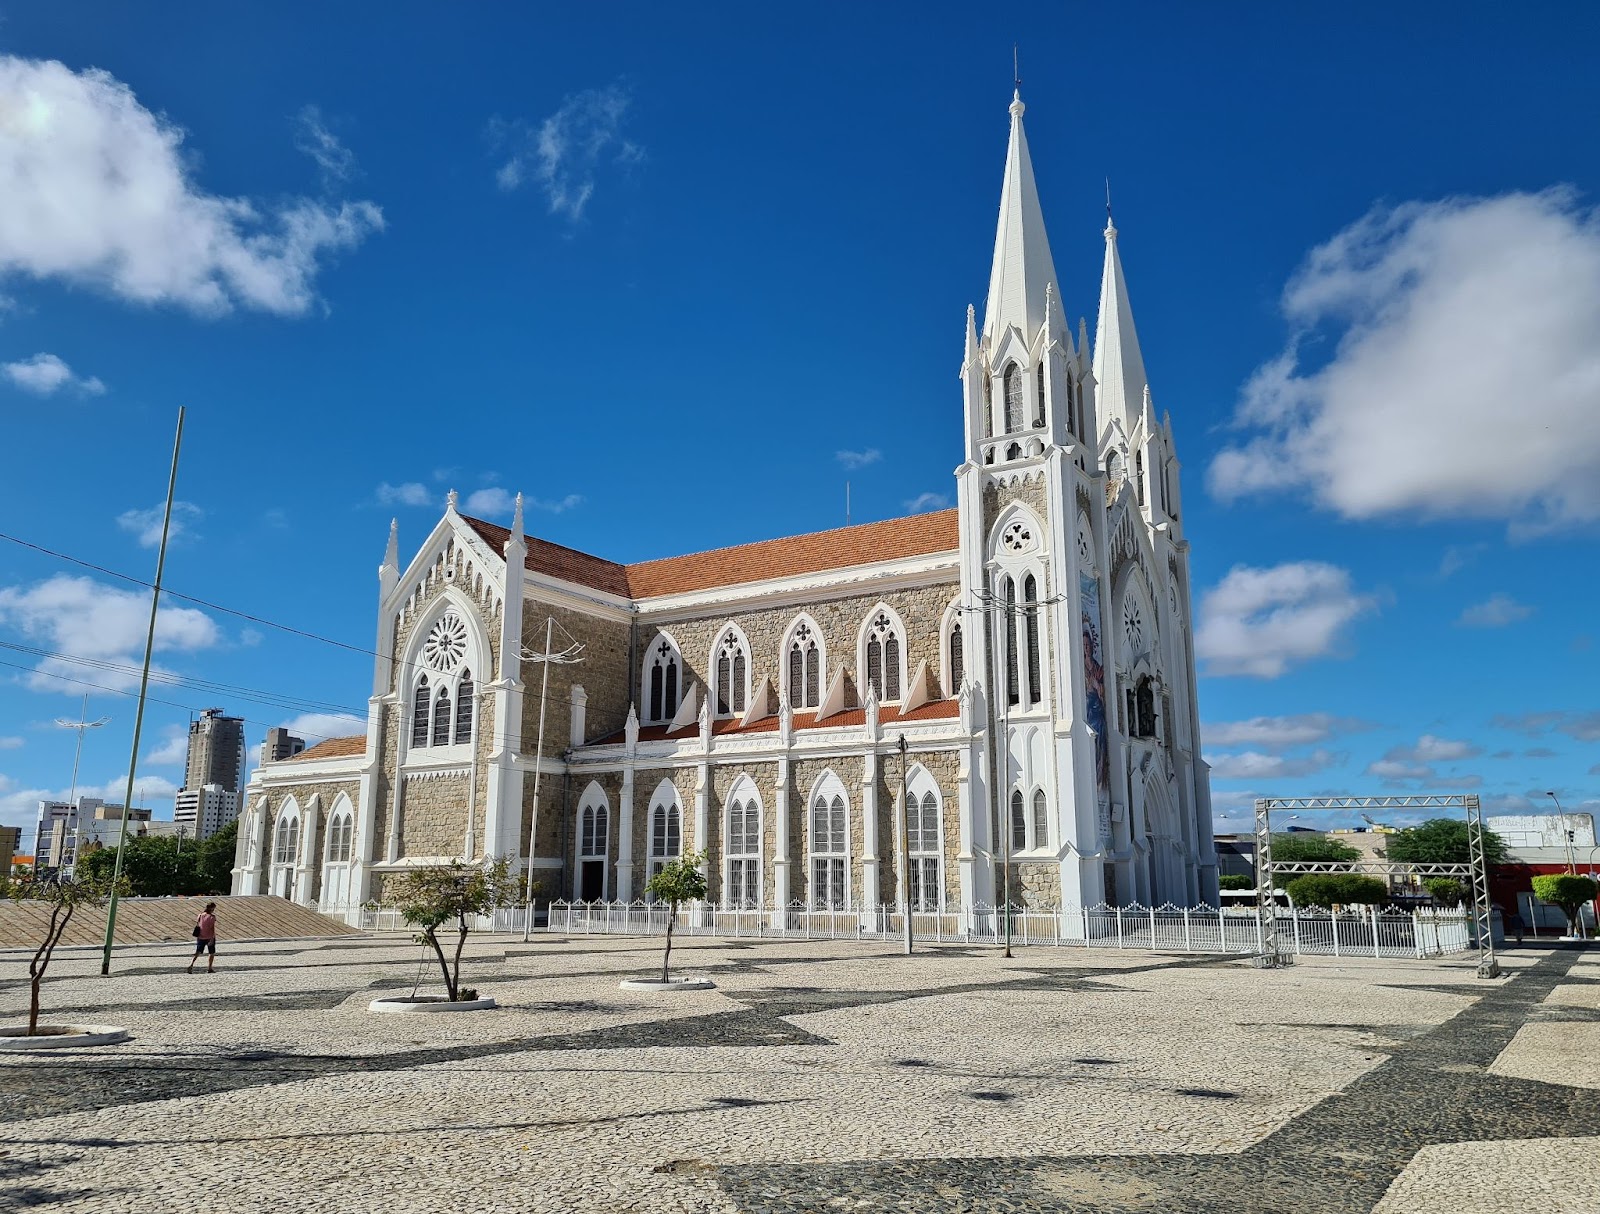 Catedral de Petrolina, um templo católico com fachada de pedra com detalhes góticos em branco e duas torres pontiagudas